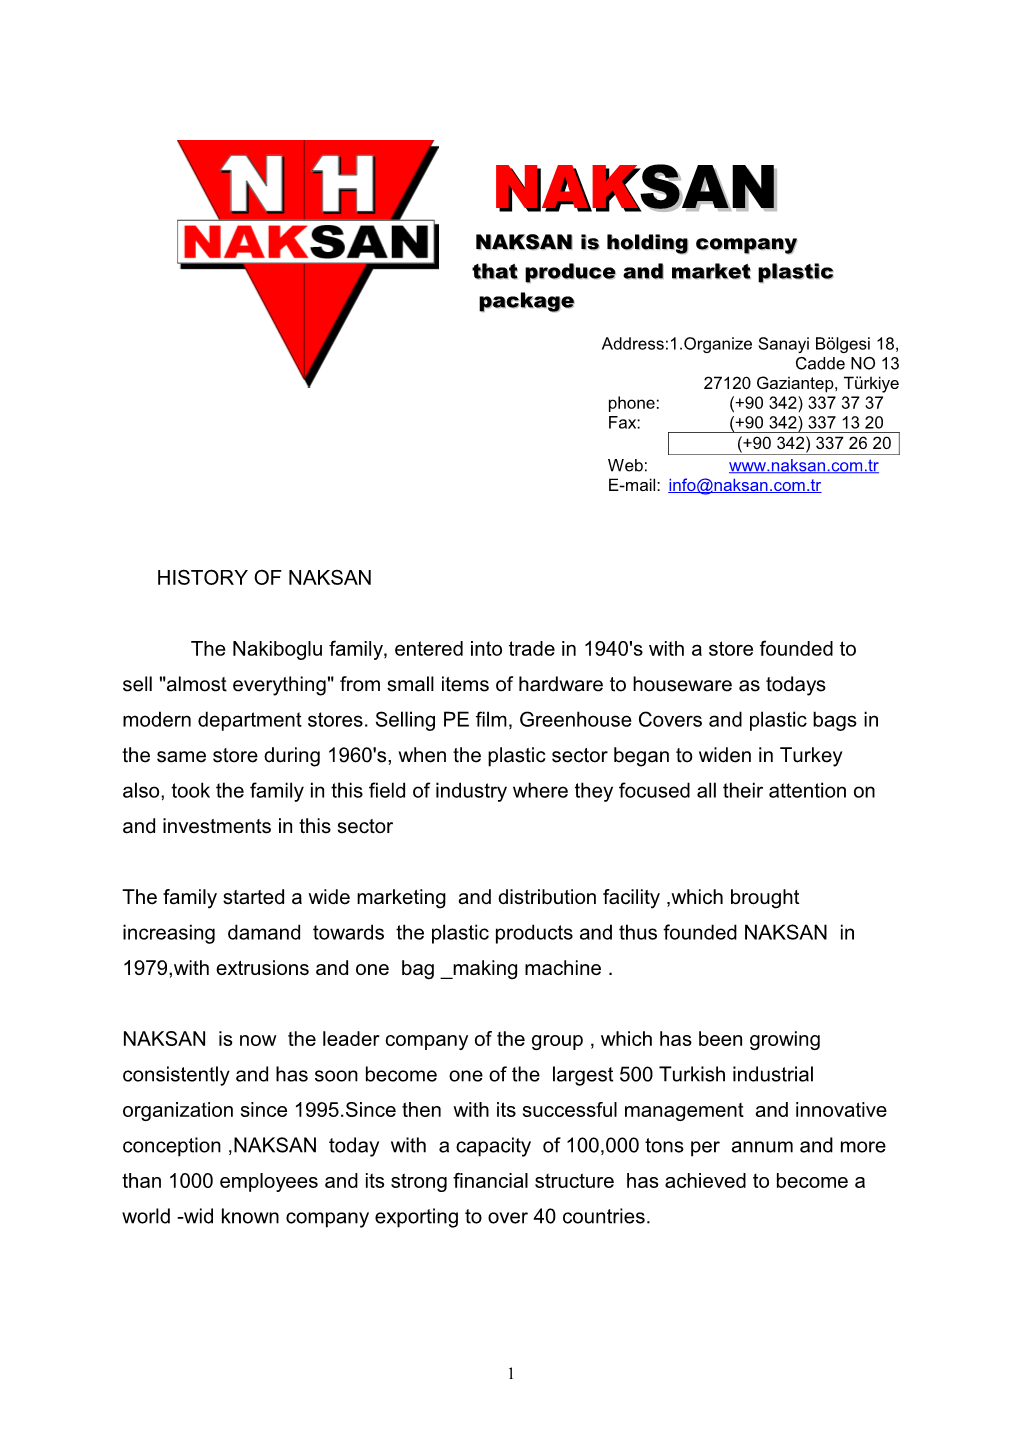 History of Naksan